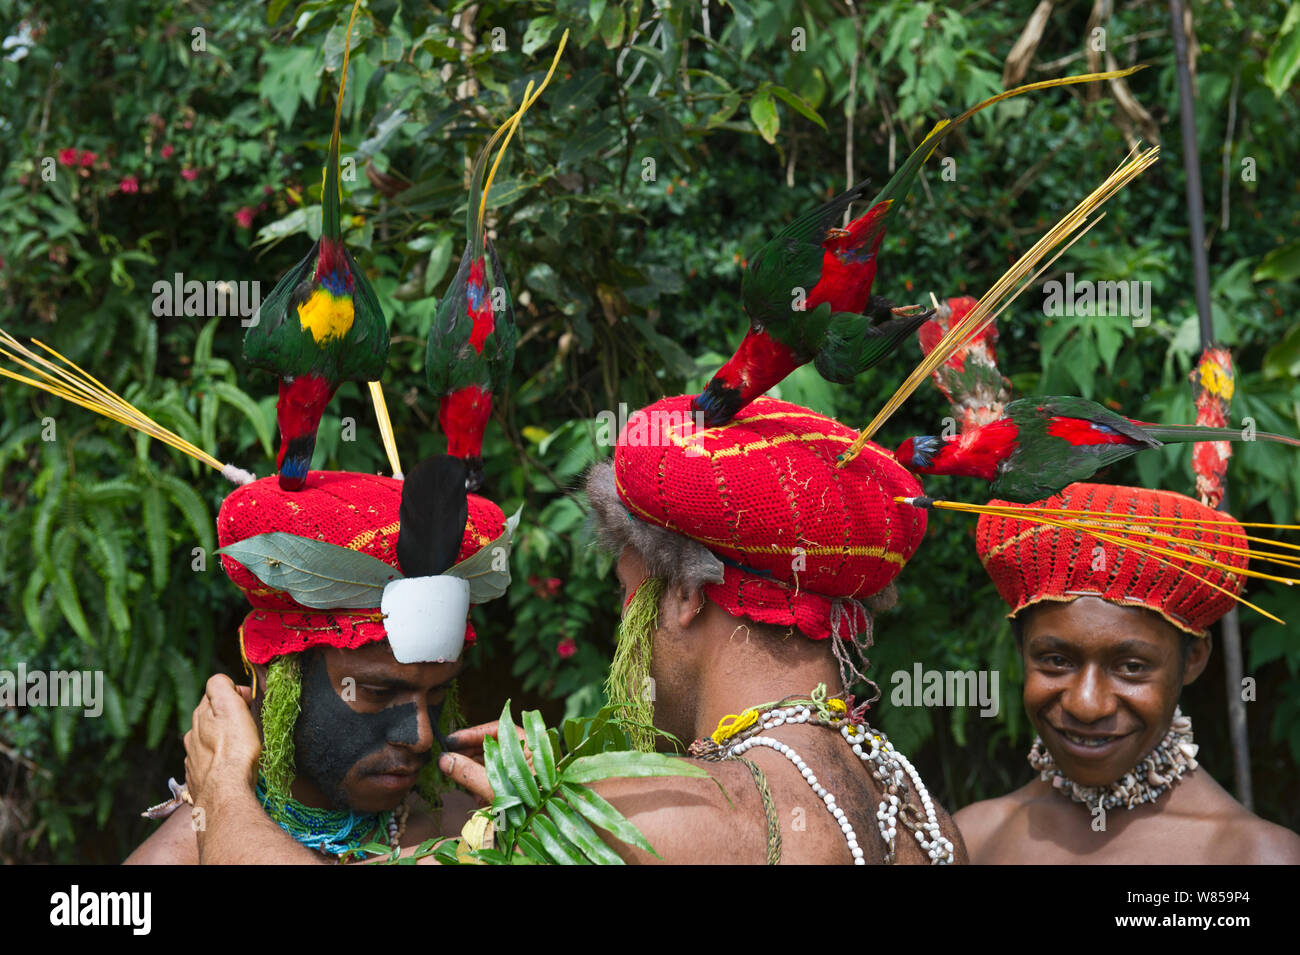 Les artistes interprètes ou exécutants la préparation d'un Sing-sing à Paiya Show, peinture visage. L'ouest des Highlands, la Papouasie-Nouvelle-Guinée. Avec la Papouasie loriquets verts en robe de tête, Août 2011 Banque D'Images